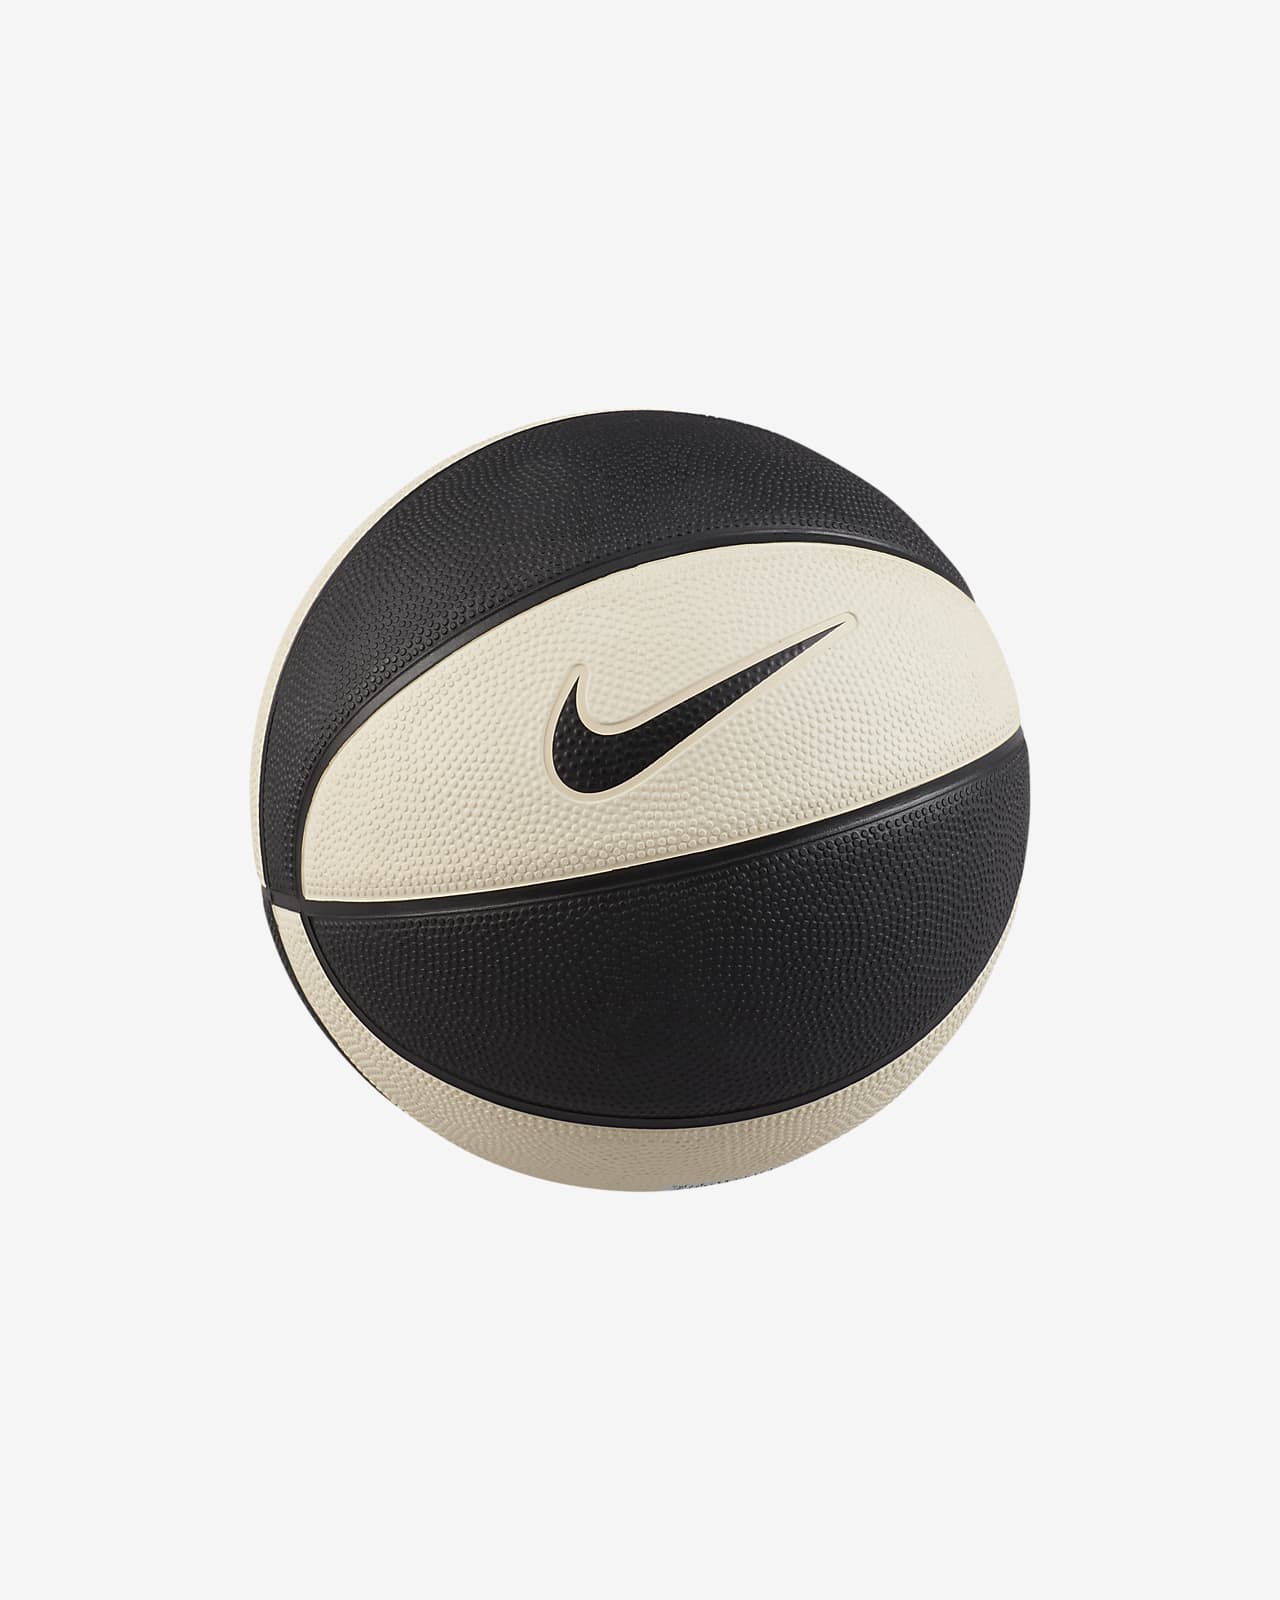 Nike Black Basketballs